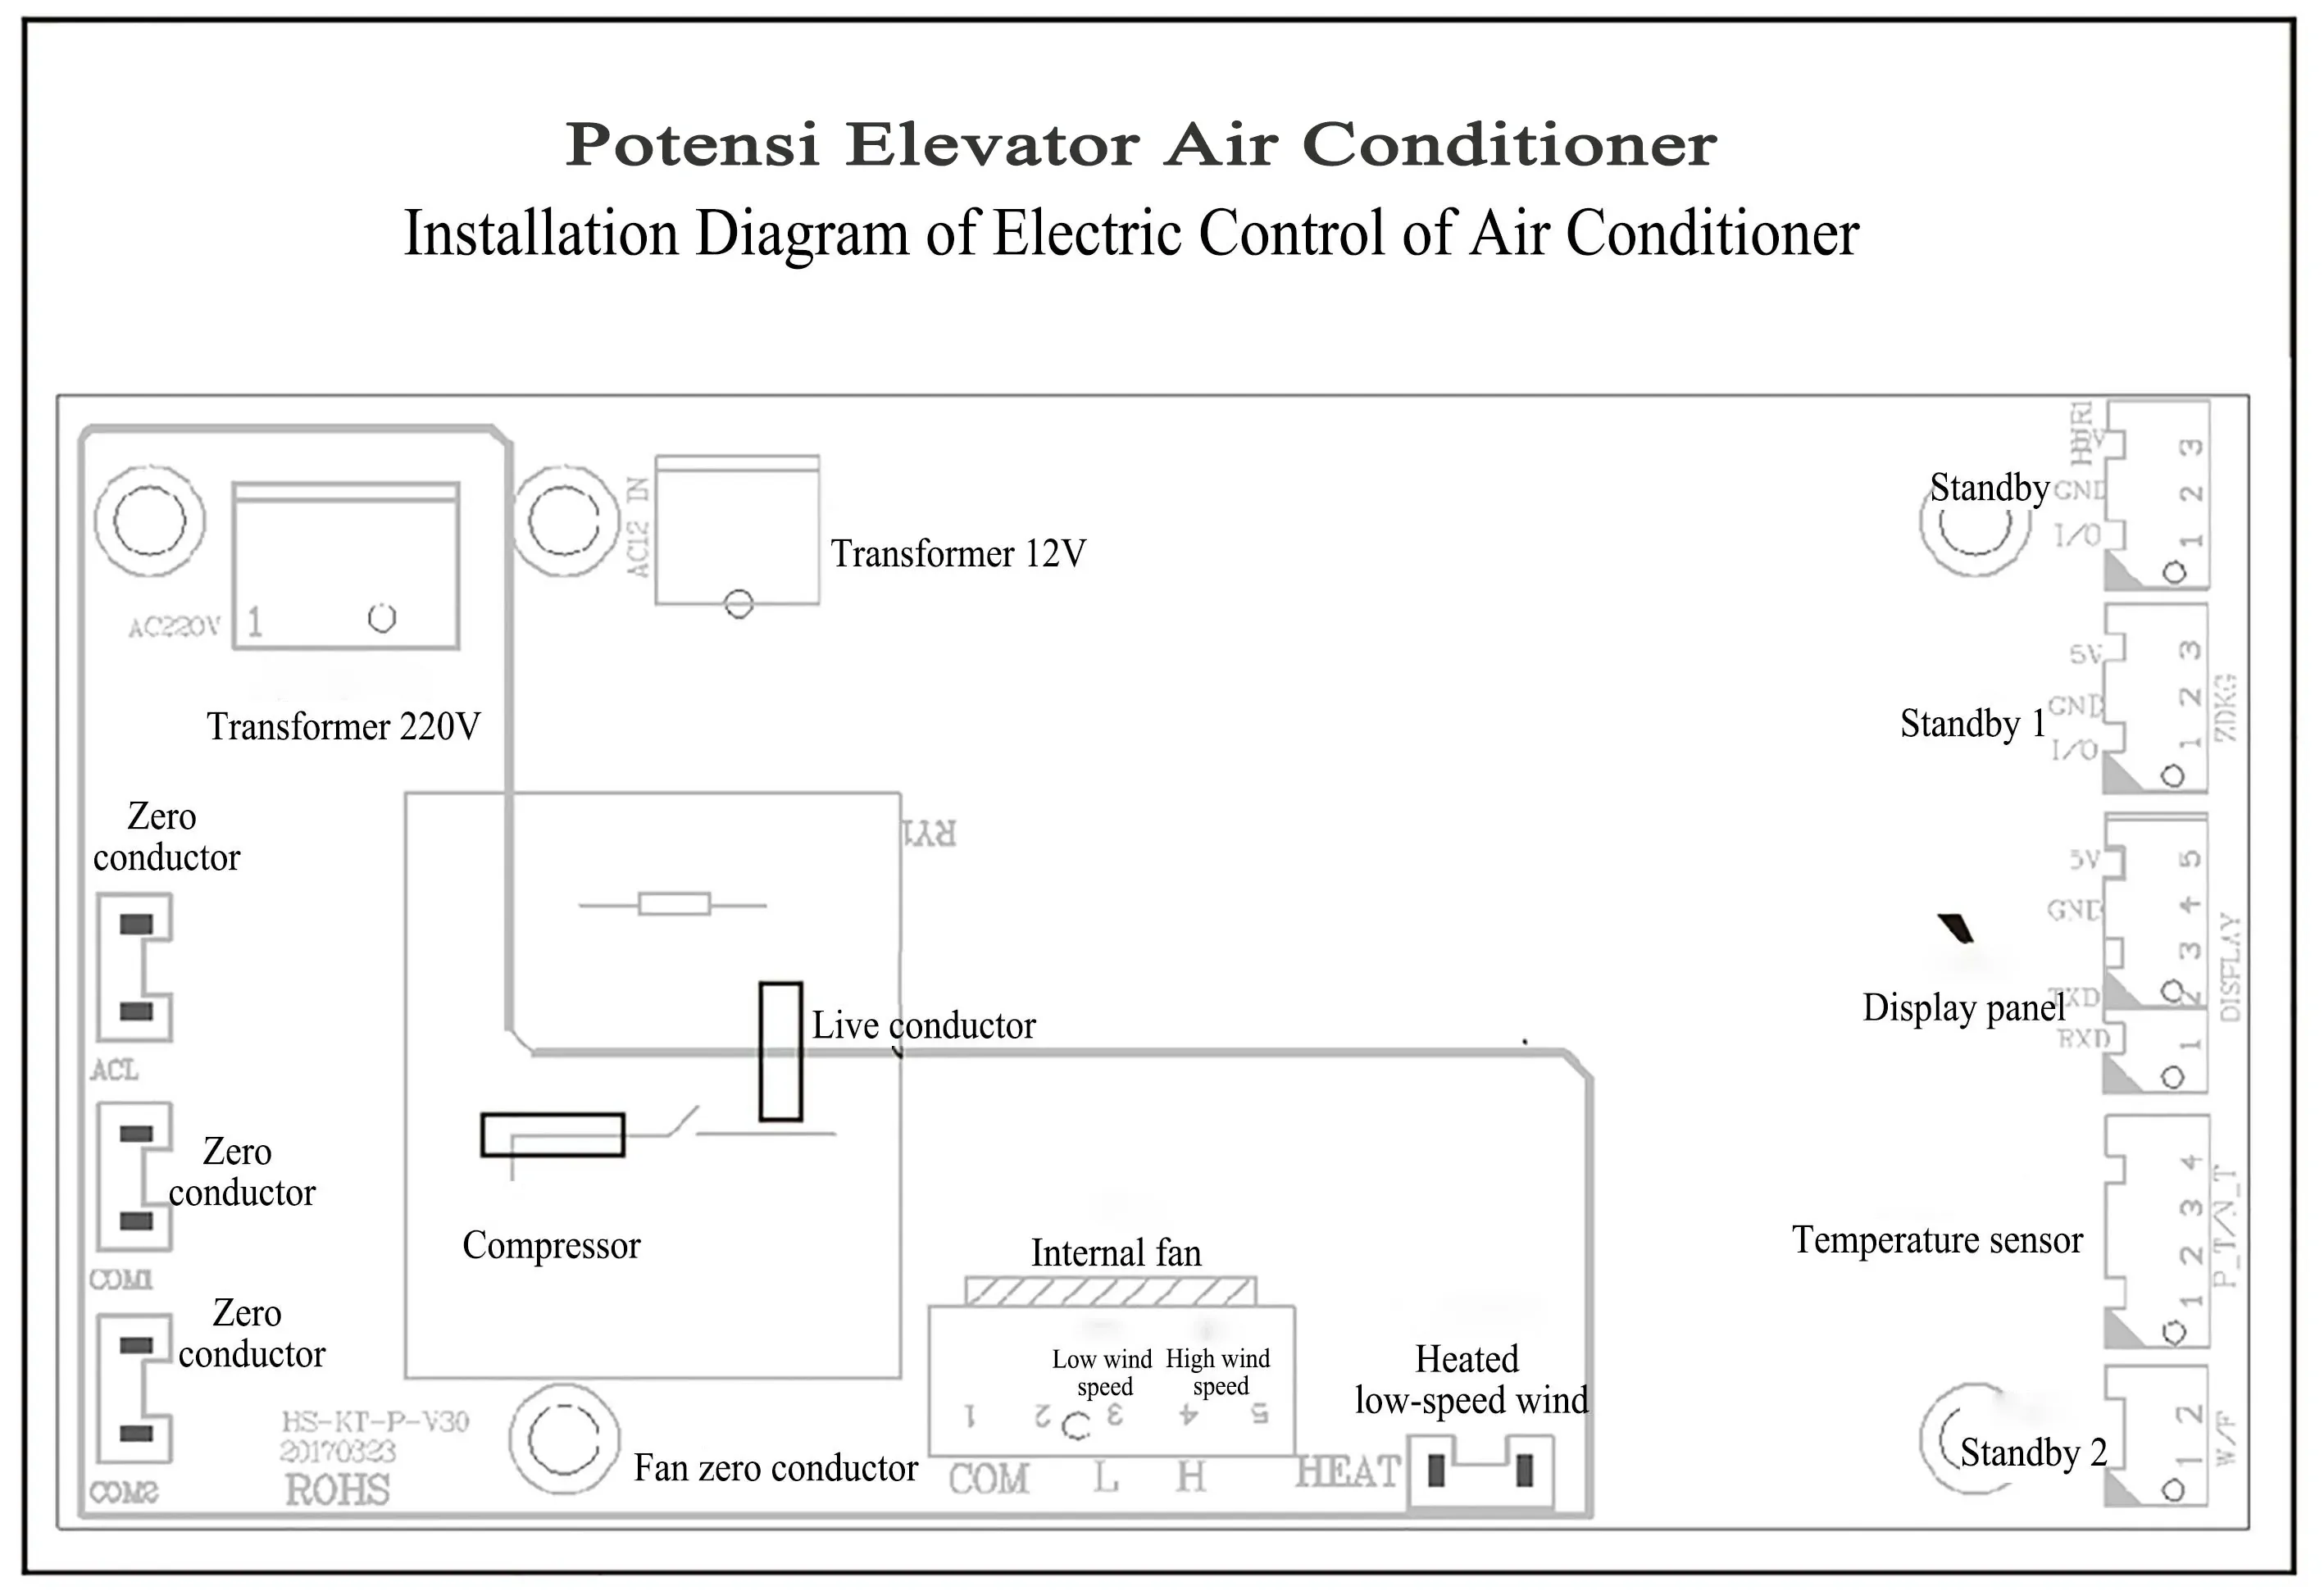 Potensi Elevator Air Conditioner